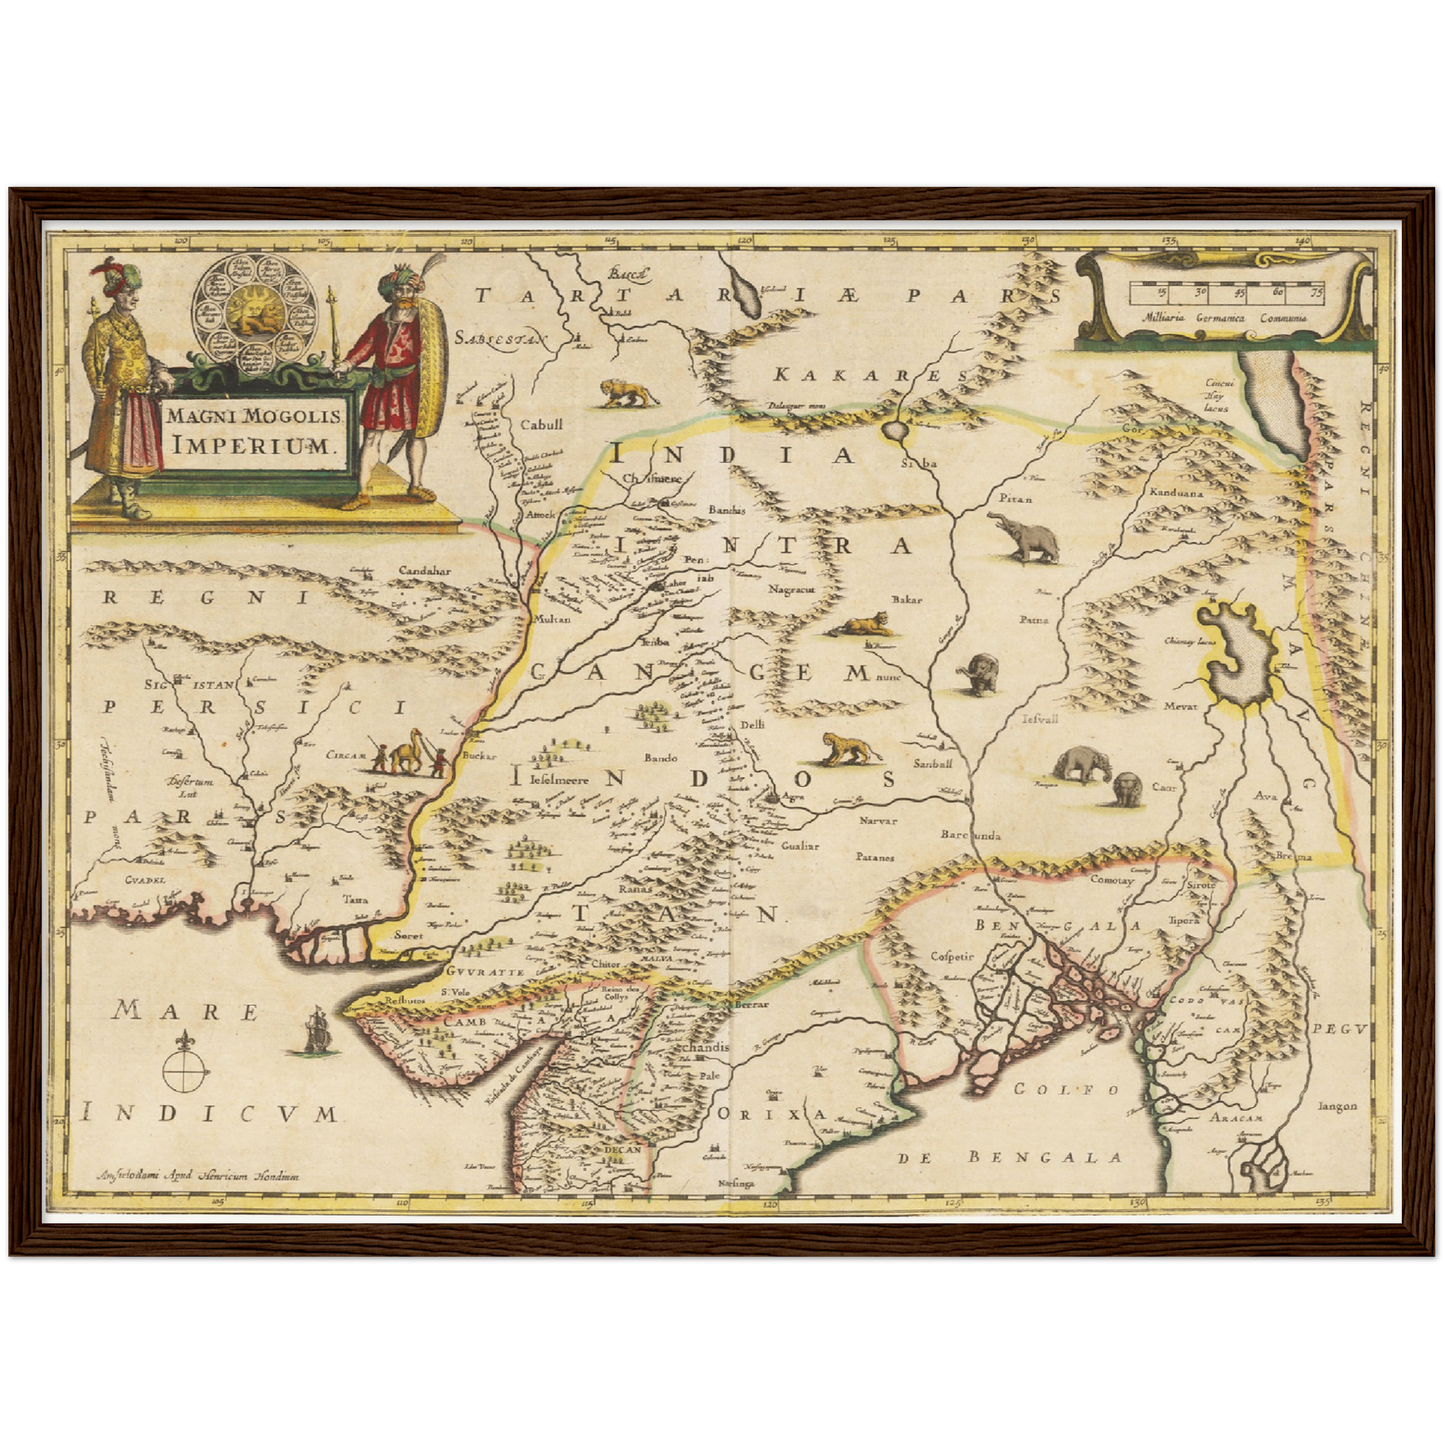 Historische Landkarte Mongolisches Imperium um 1638